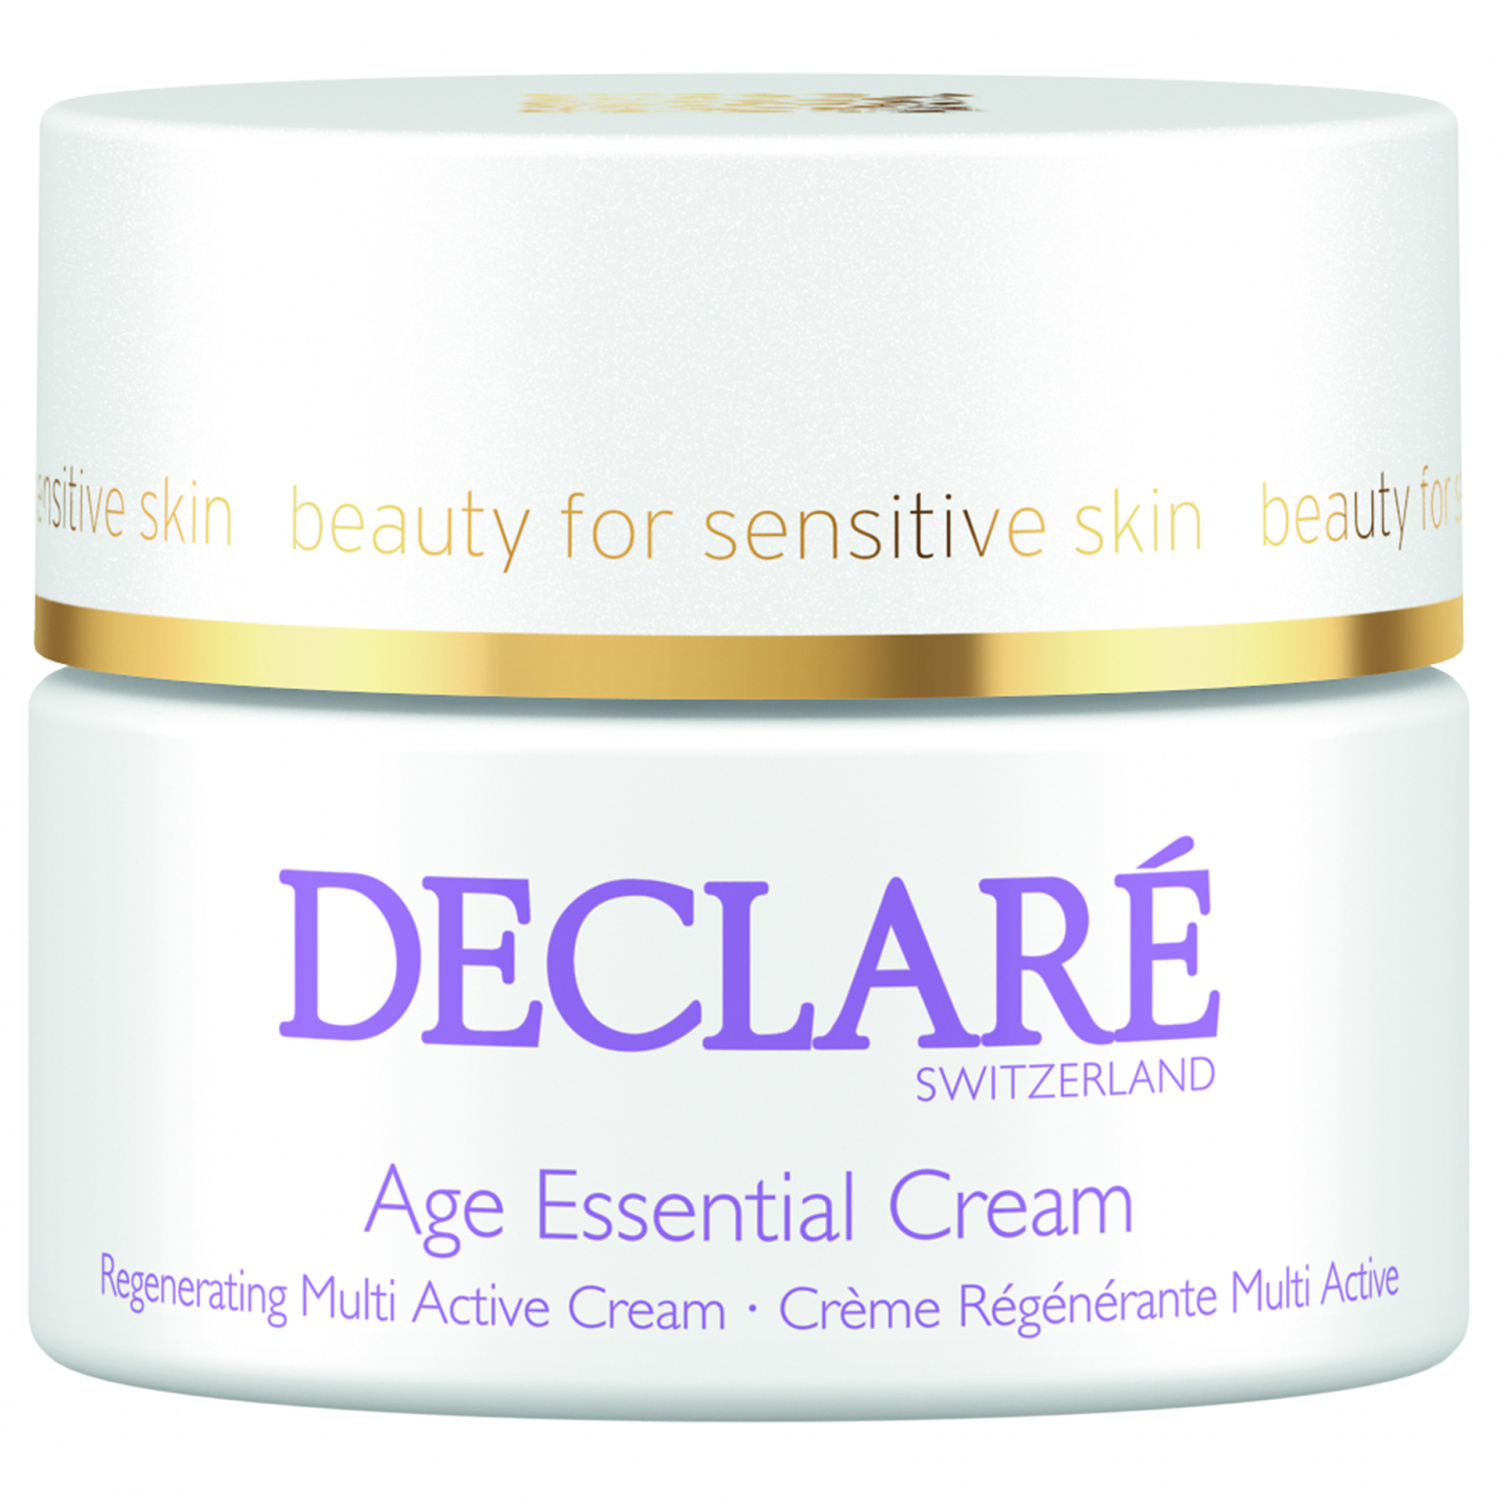 Declare Age Essential Cream 50ml. - интернет-магазин профессиональной косметики Spadream, изображение 30760